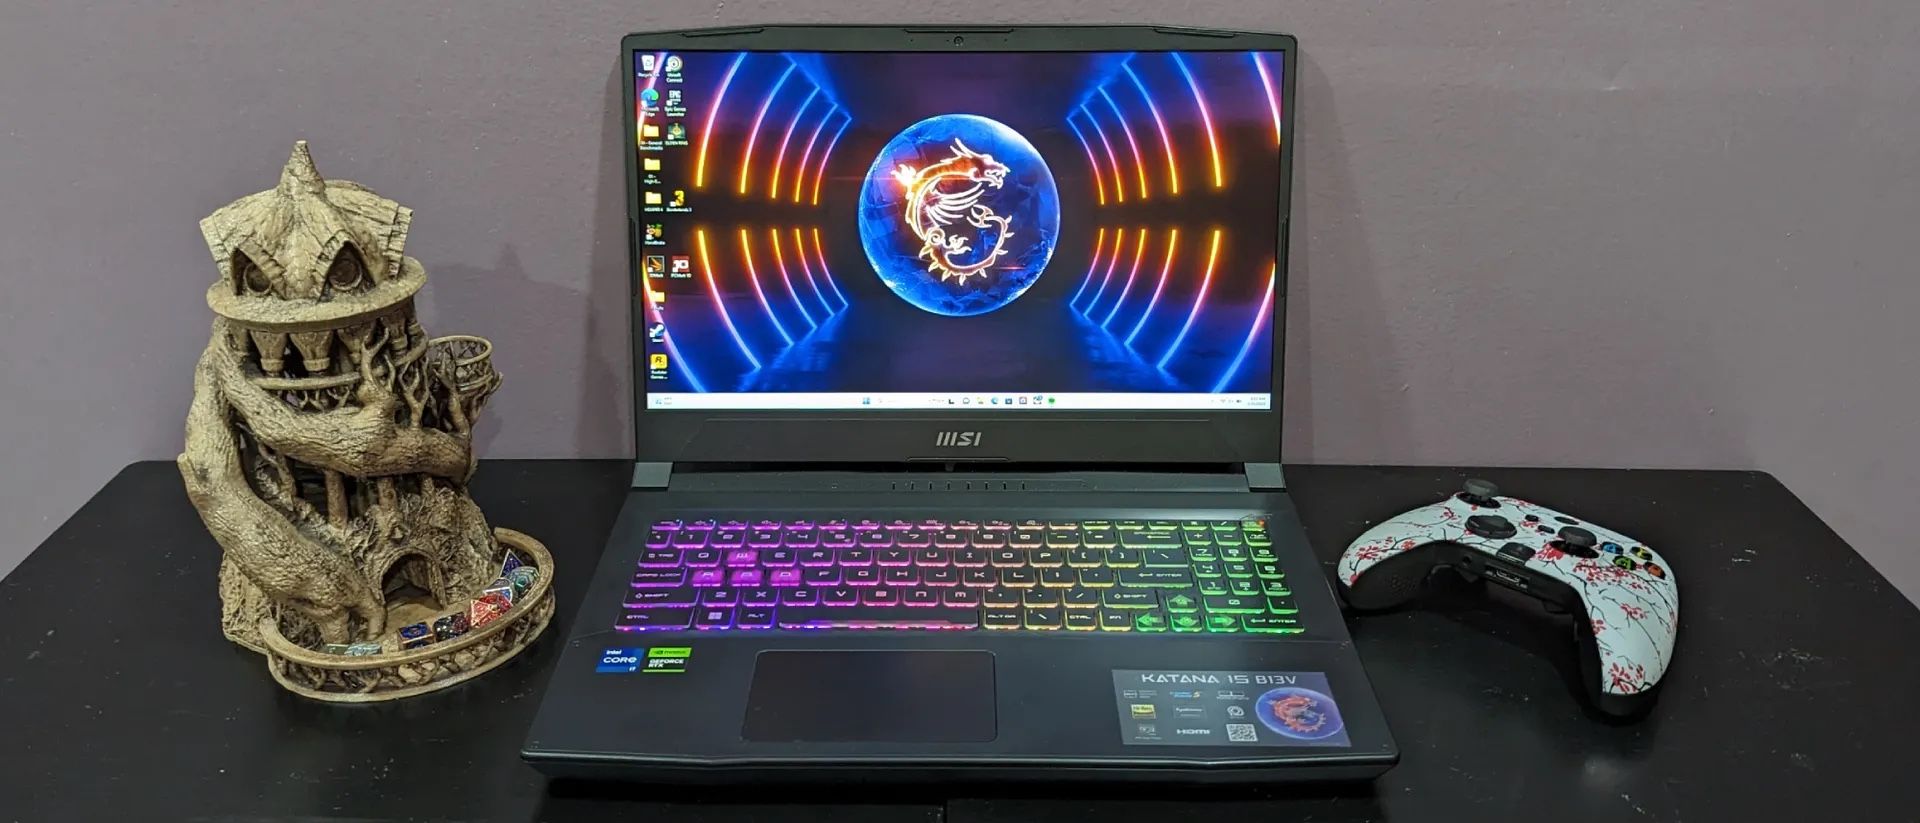 MSI 4070 Gaming Laptop 